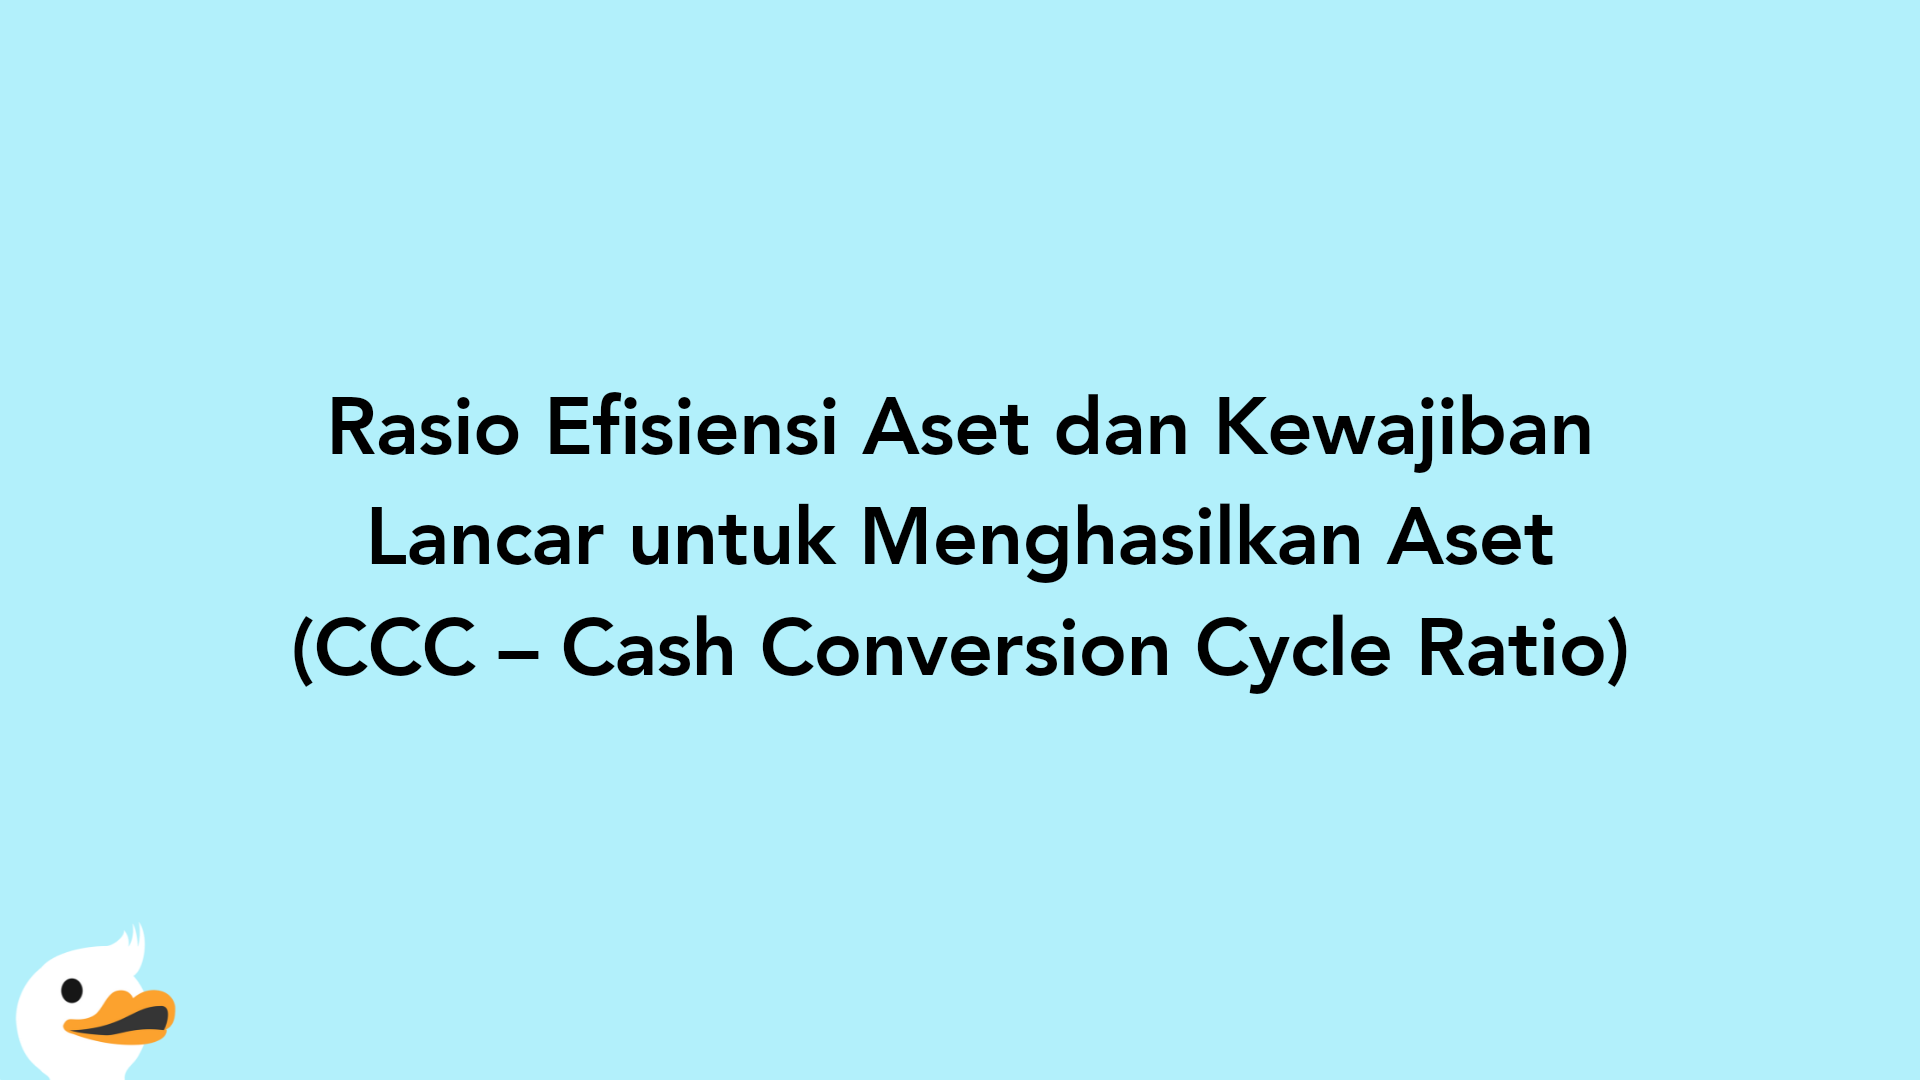 Rasio Efisiensi Aset dan Kewajiban Lancar untuk Menghasilkan Aset (CCC – Cash Conversion Cycle Ratio)